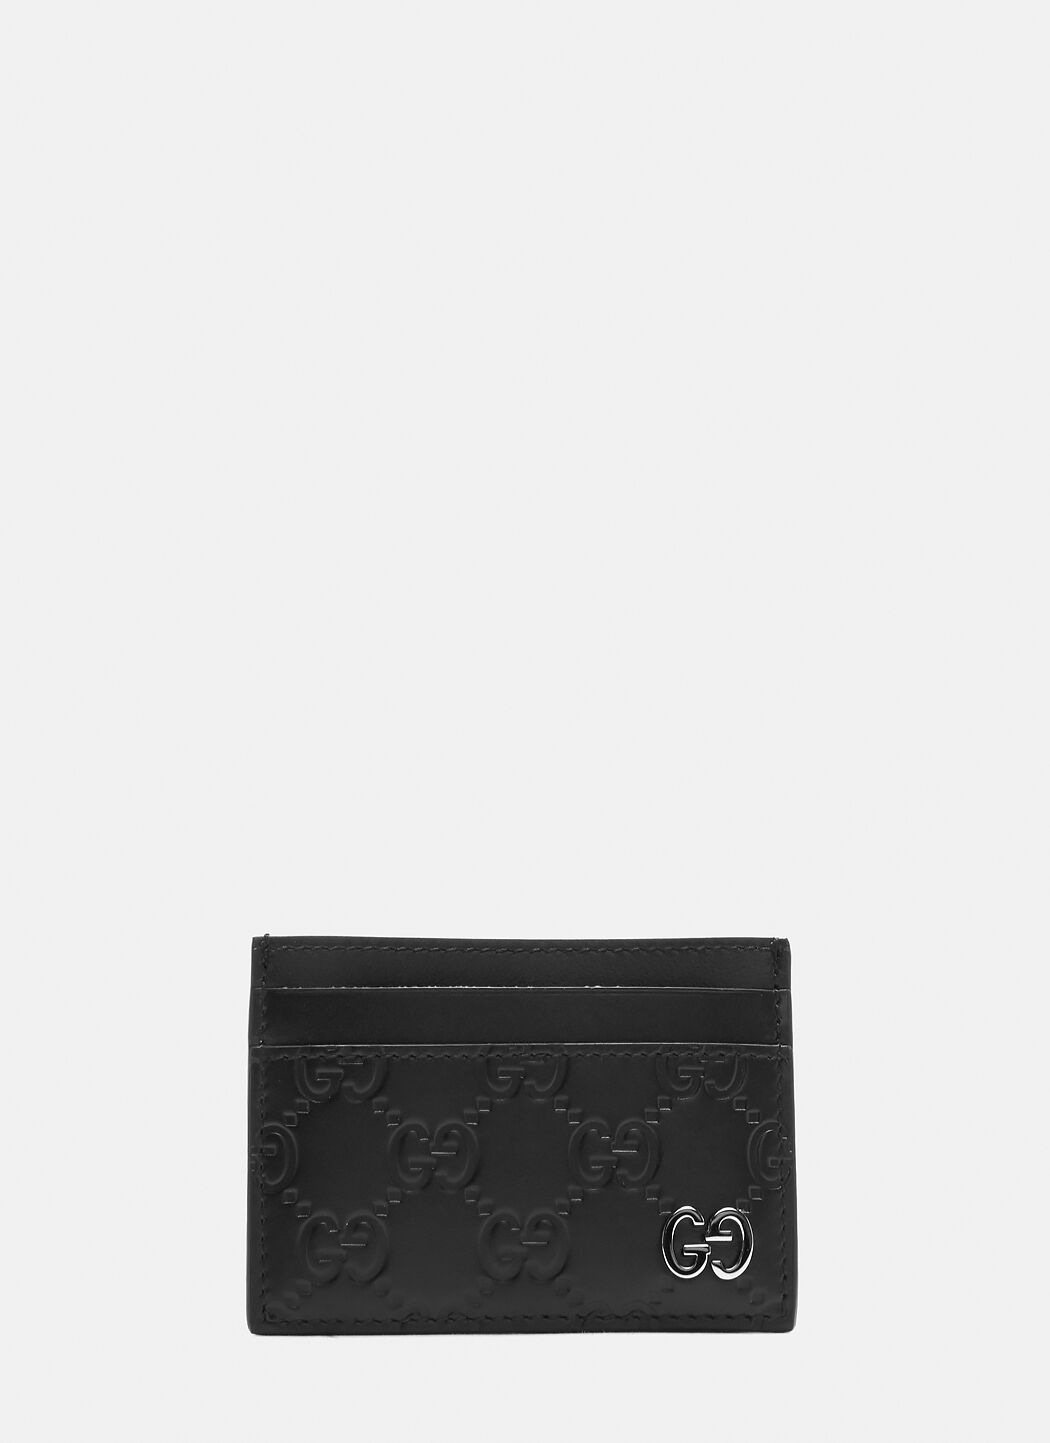 Saint Laurent Gucci シグネチャーカードケース ブラック sla0238013